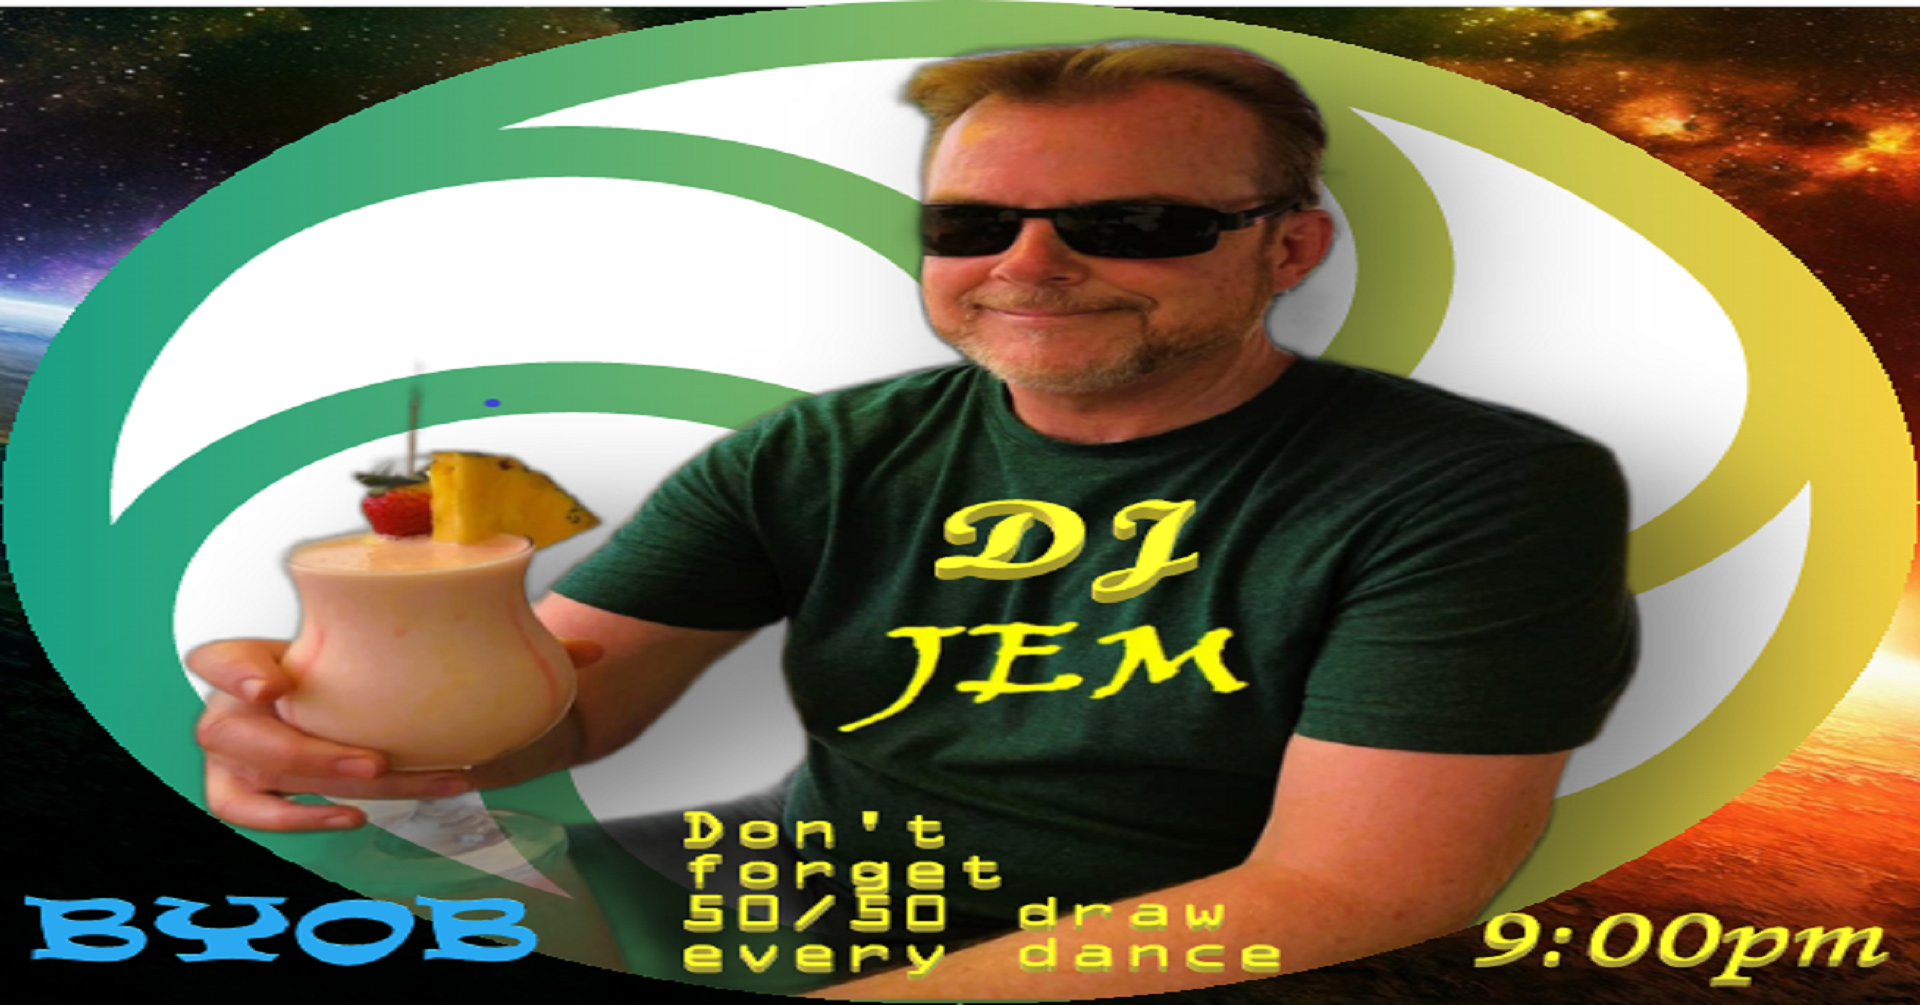 DJ JEM